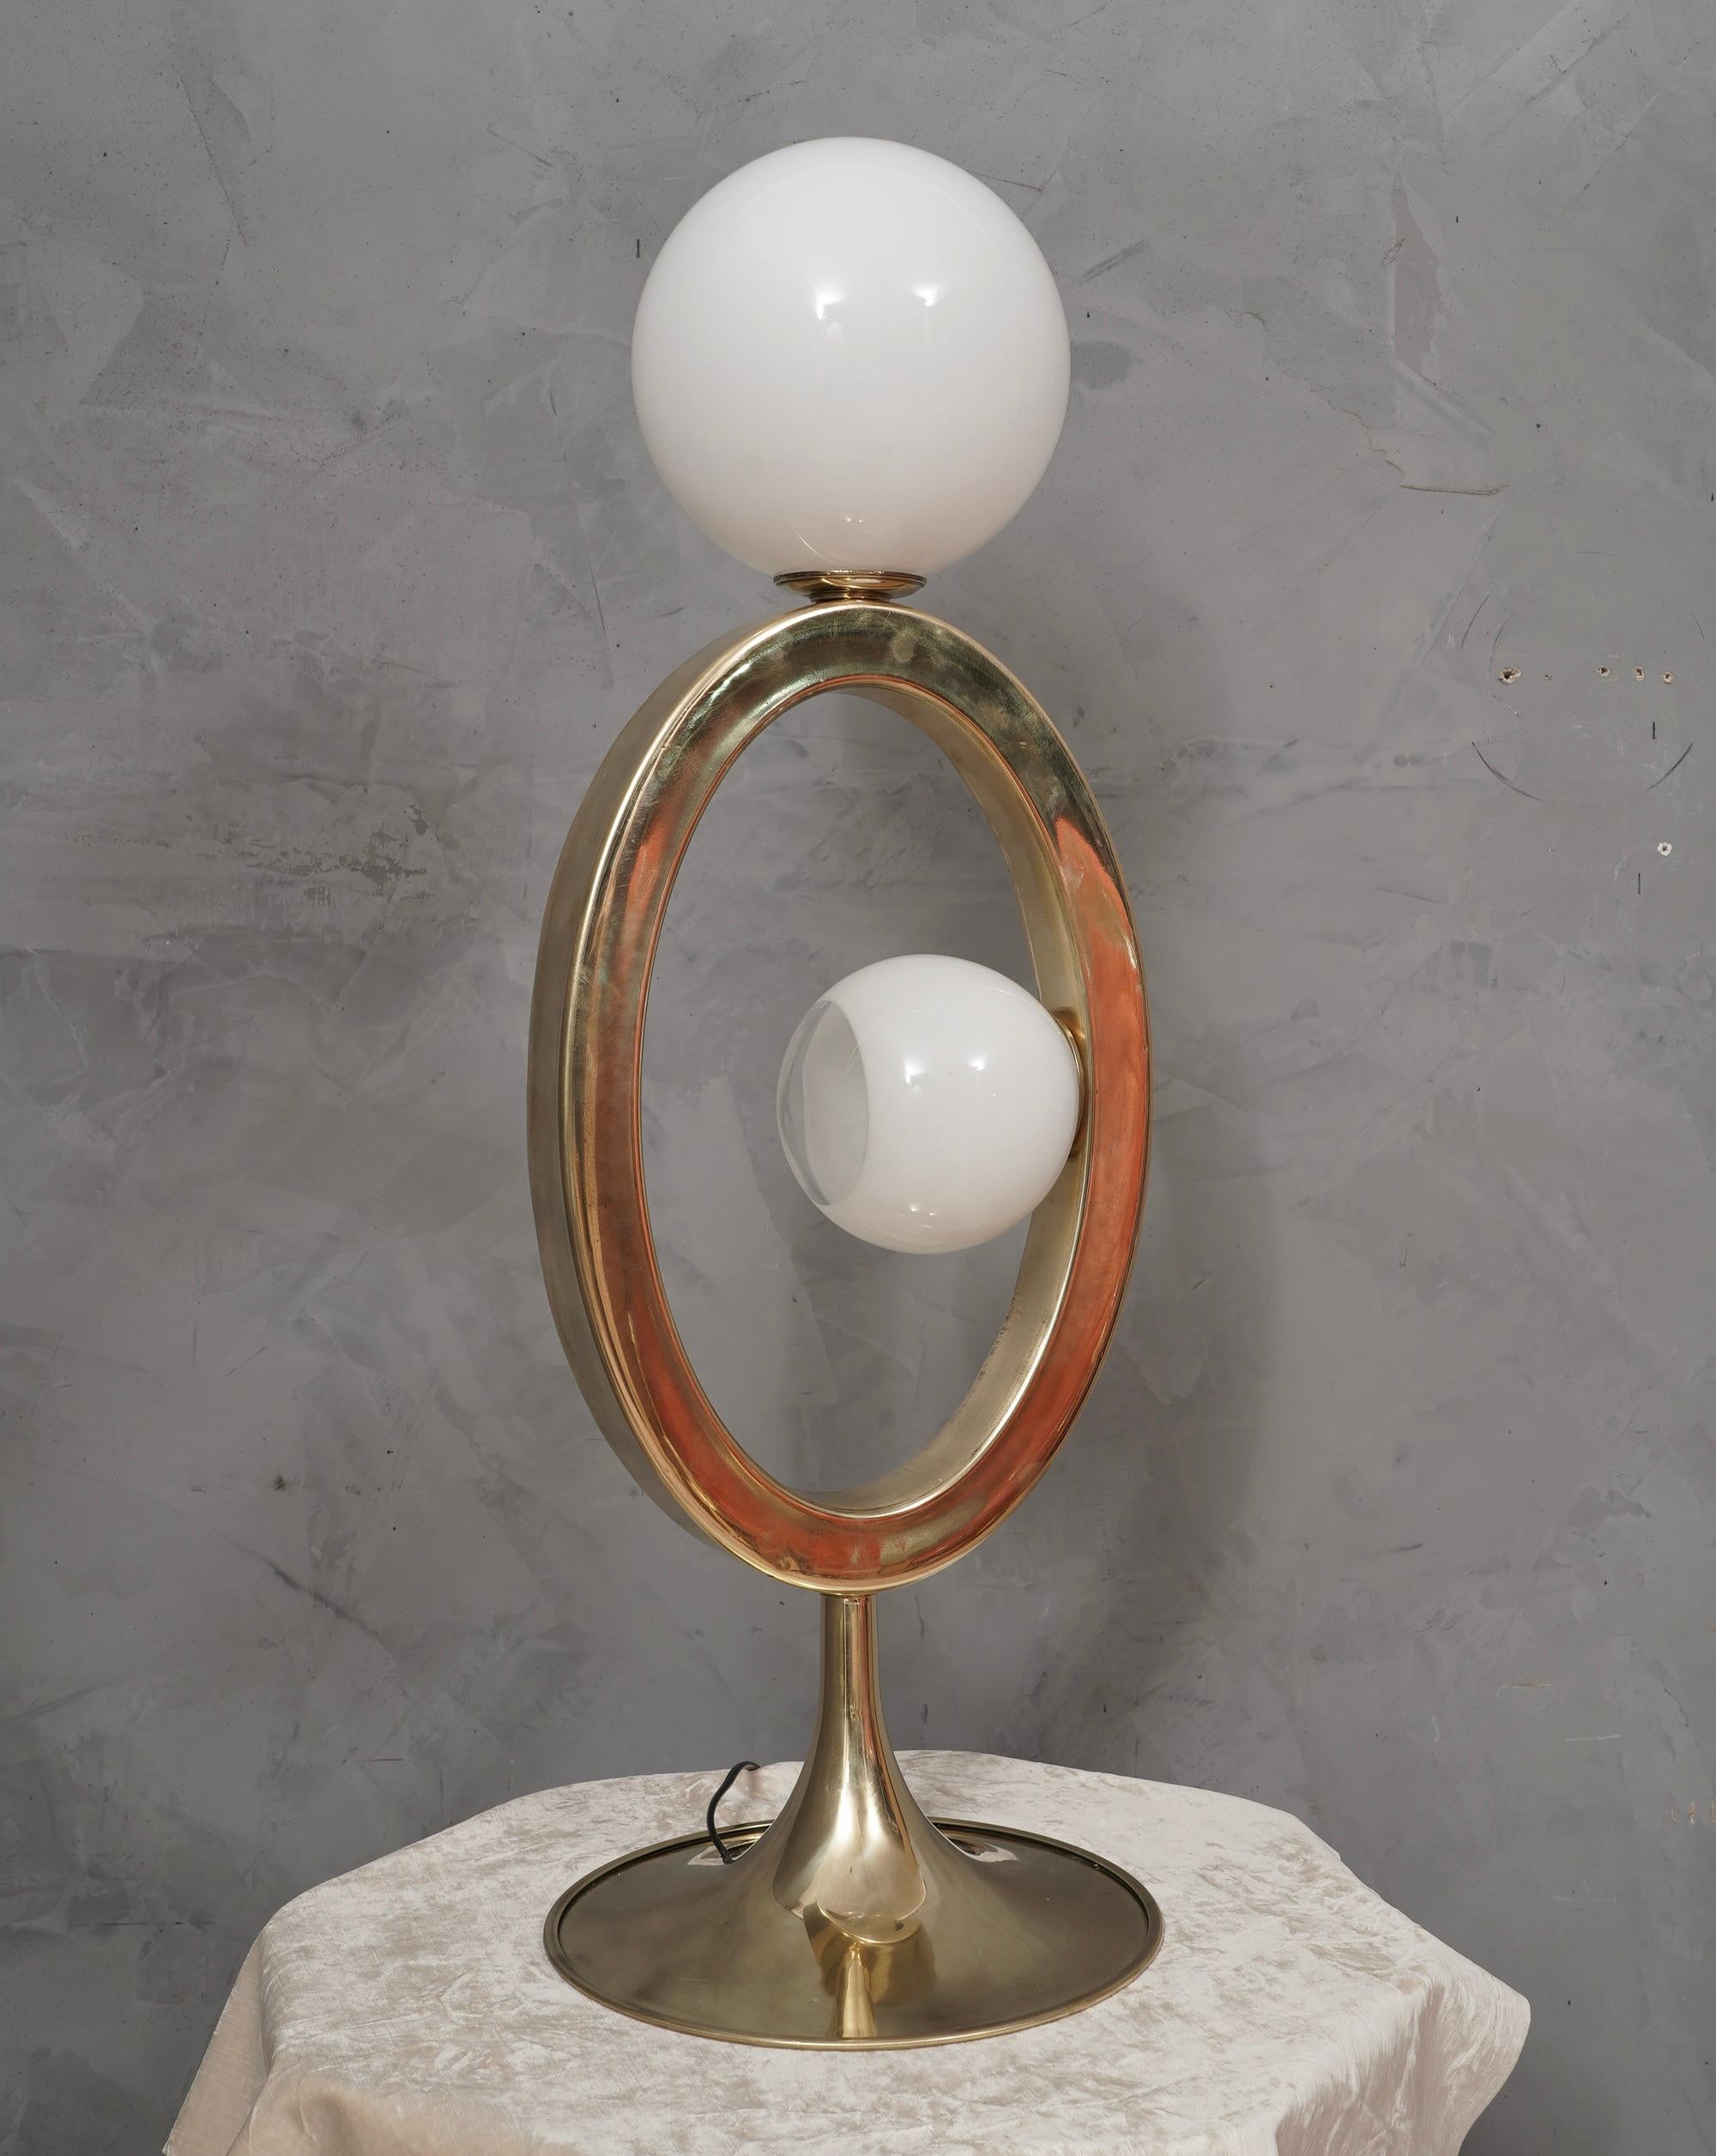 Originelle und charakteristische Tischlampen aus Messing und Murano-Glas. Einzigartiges Design, speziell für unseren HannauRoma Store entworfen und hergestellt.

Die Lampe besteht aus einer sehr modernen ovalen Messingstruktur, in deren Mittelteil